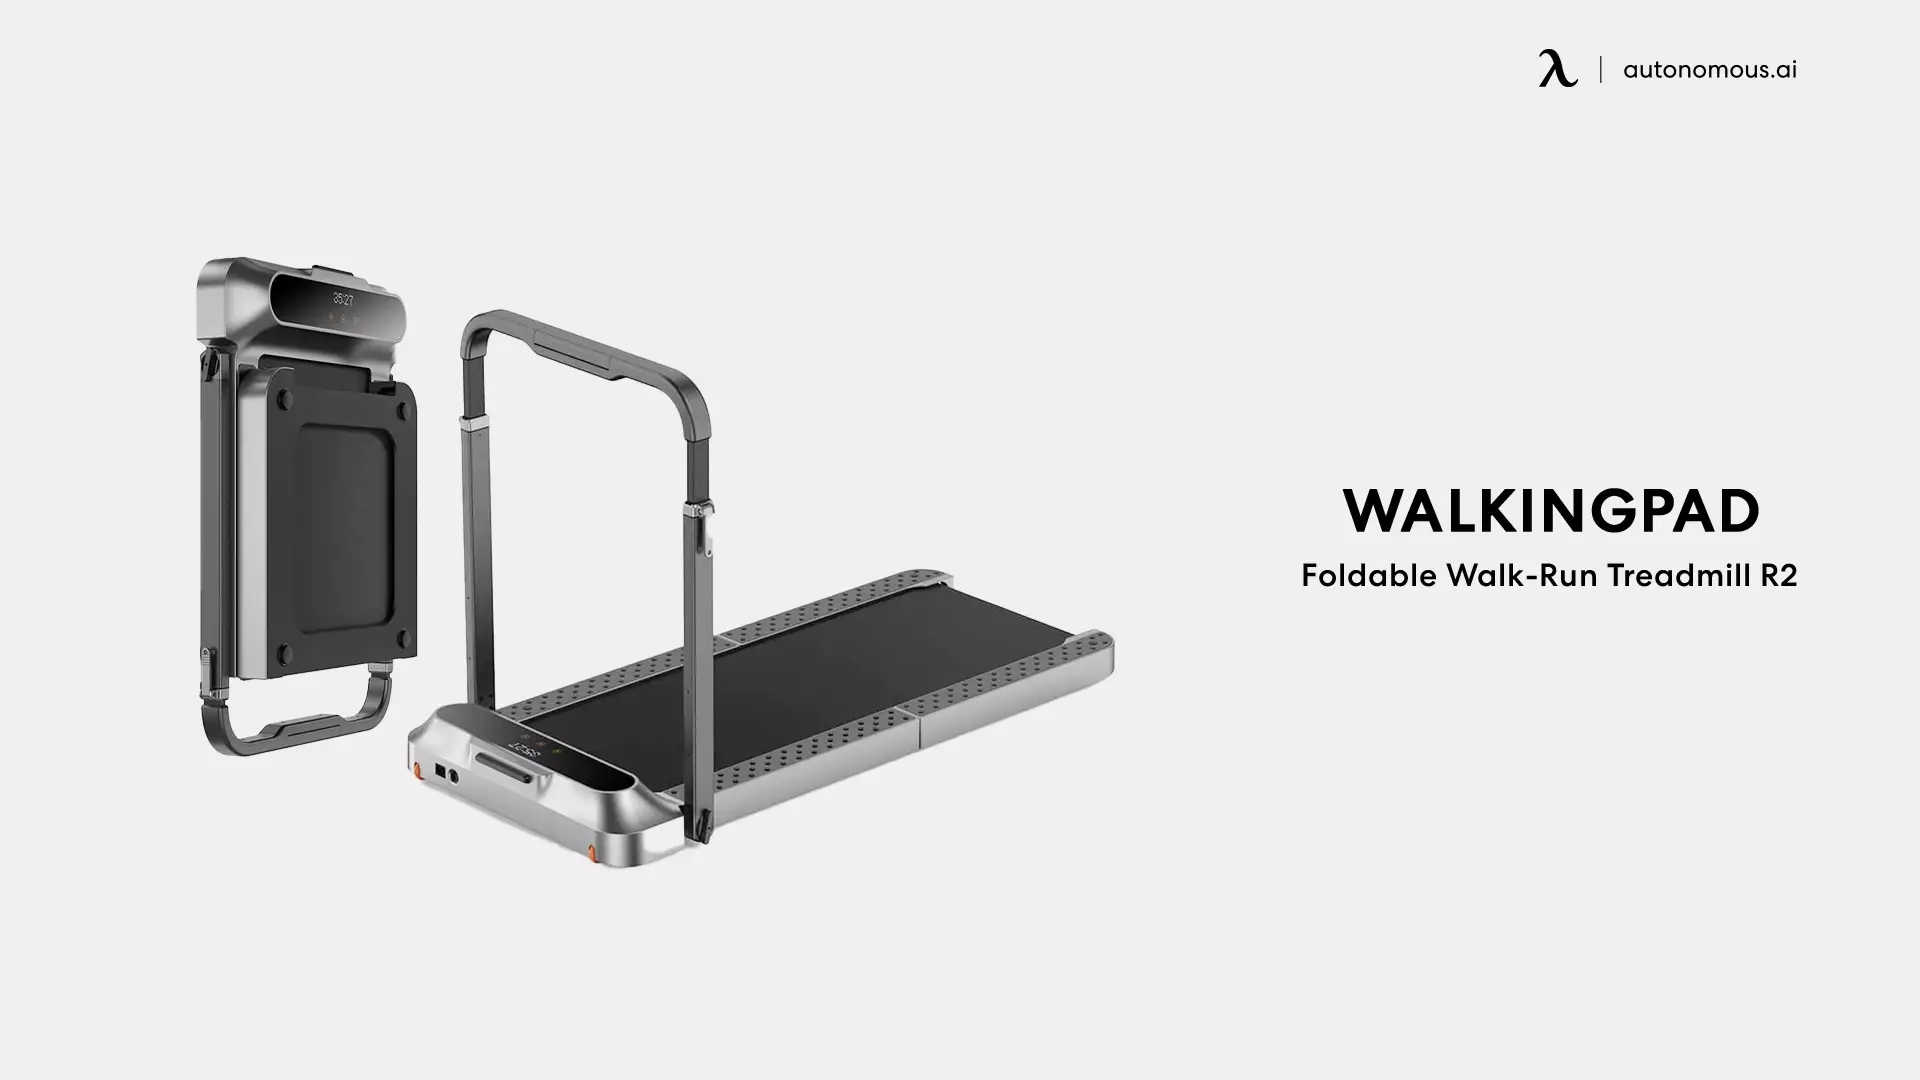 Foldable Walk-Run Treadmill R2 by WalkingPad